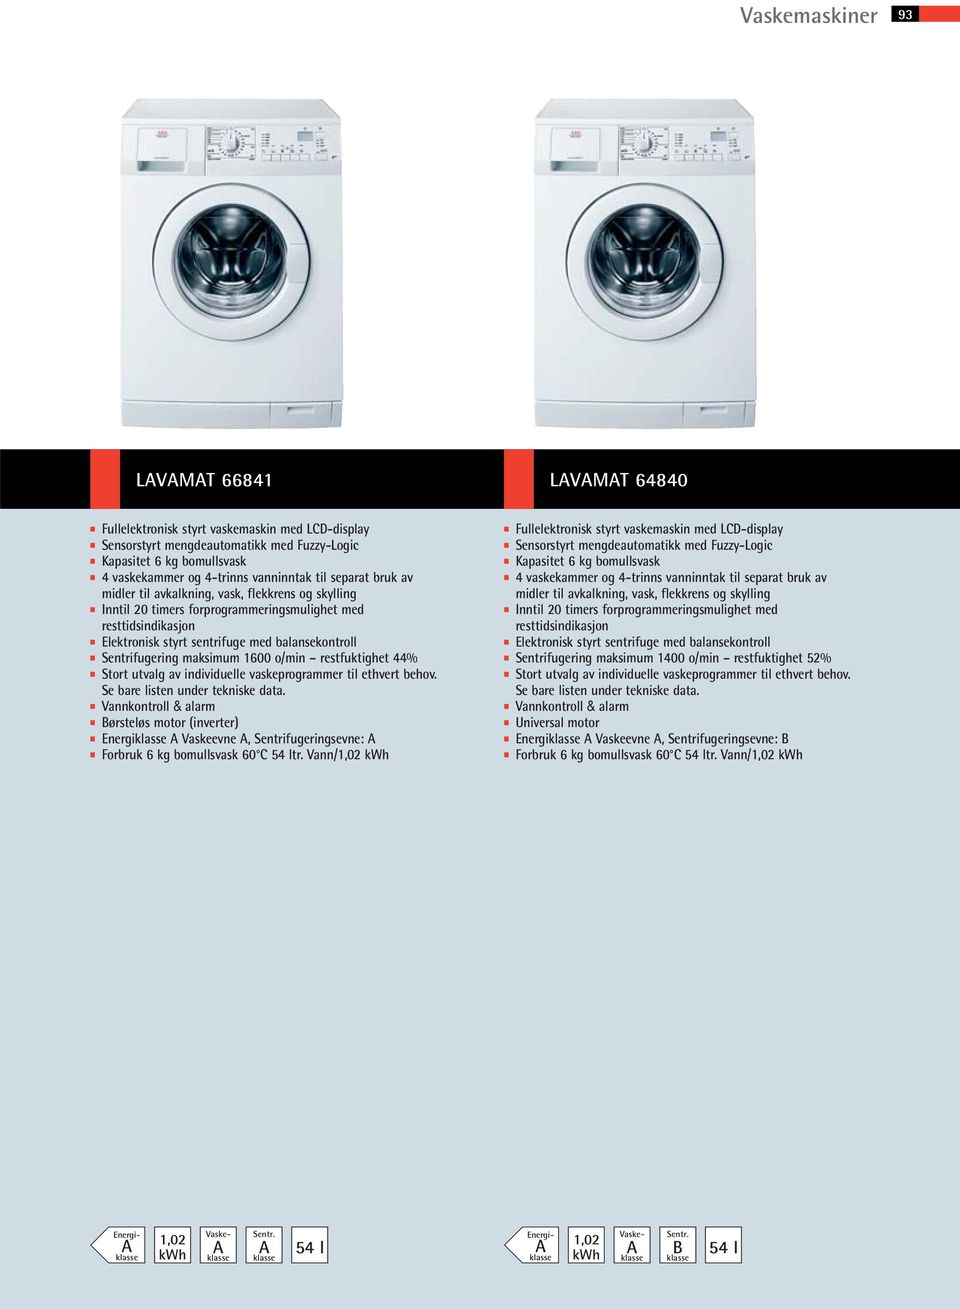 Sentrifugering maksimum 1600 o/min restfuktighet 44% Stort utvalg av individuelle vaskeprogrammer til ethvert behov. Se bare listen under tekniske data.